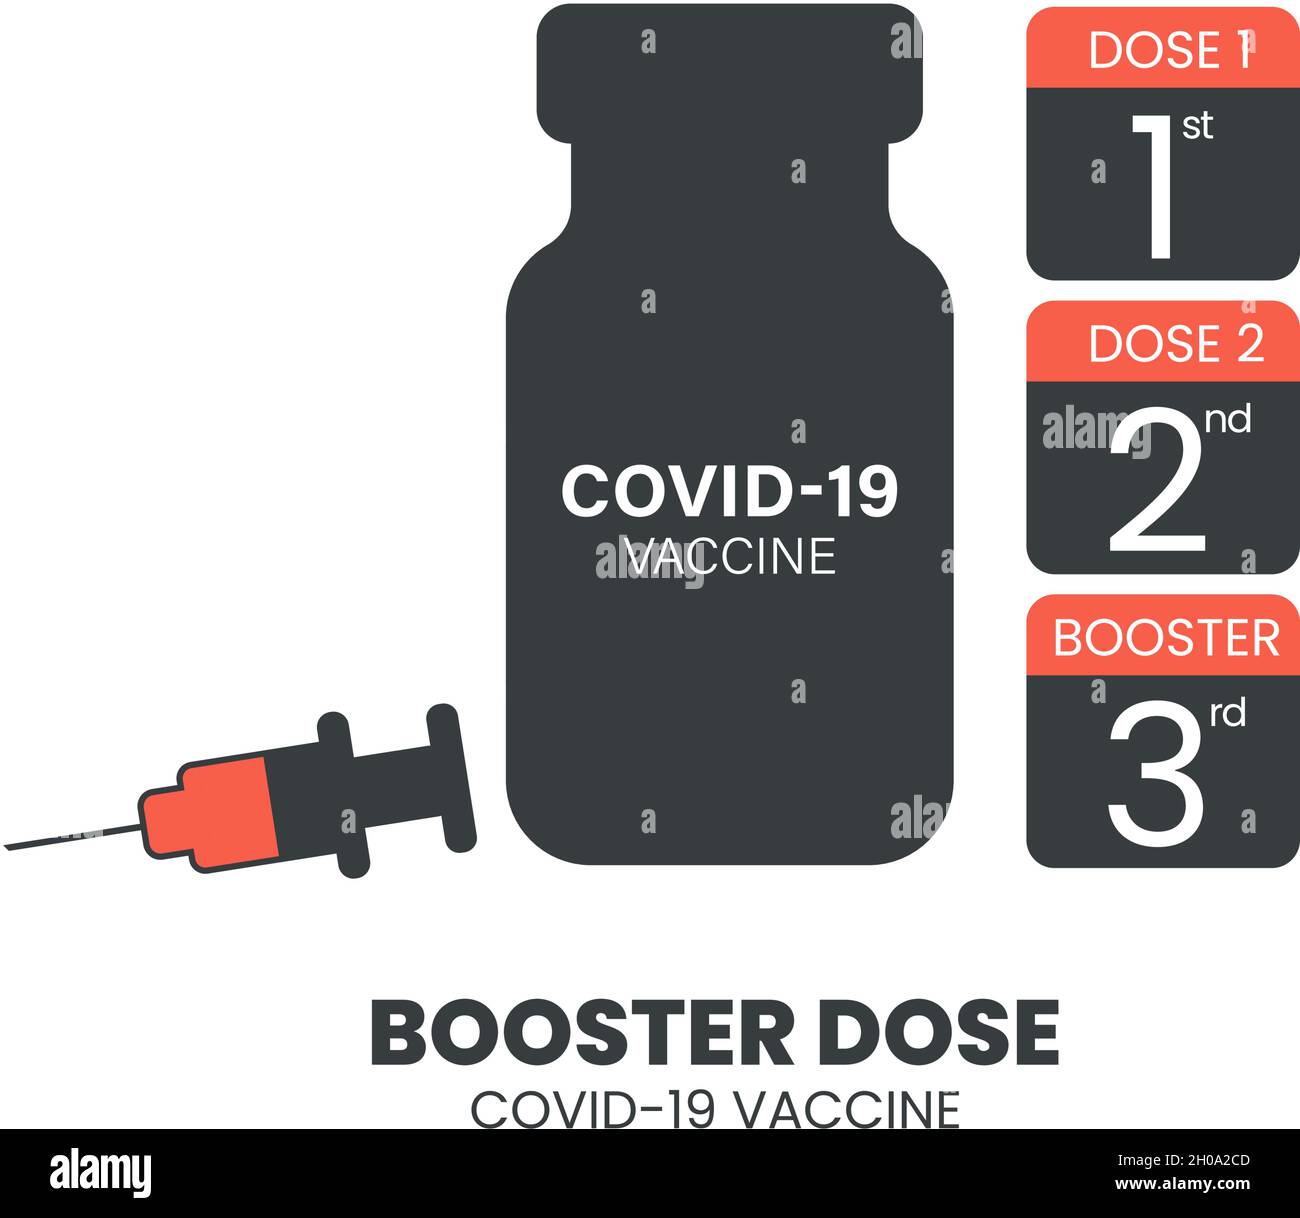 Inyección de refuerzo para aumentar la inmunidad o el concepto de dosis de refuerzo de la vacuna COVID-19. La tercera vacuna de refuerzo se administra después de la dosis de imprimación. Vector de Illustrator. Ilustración del Vector